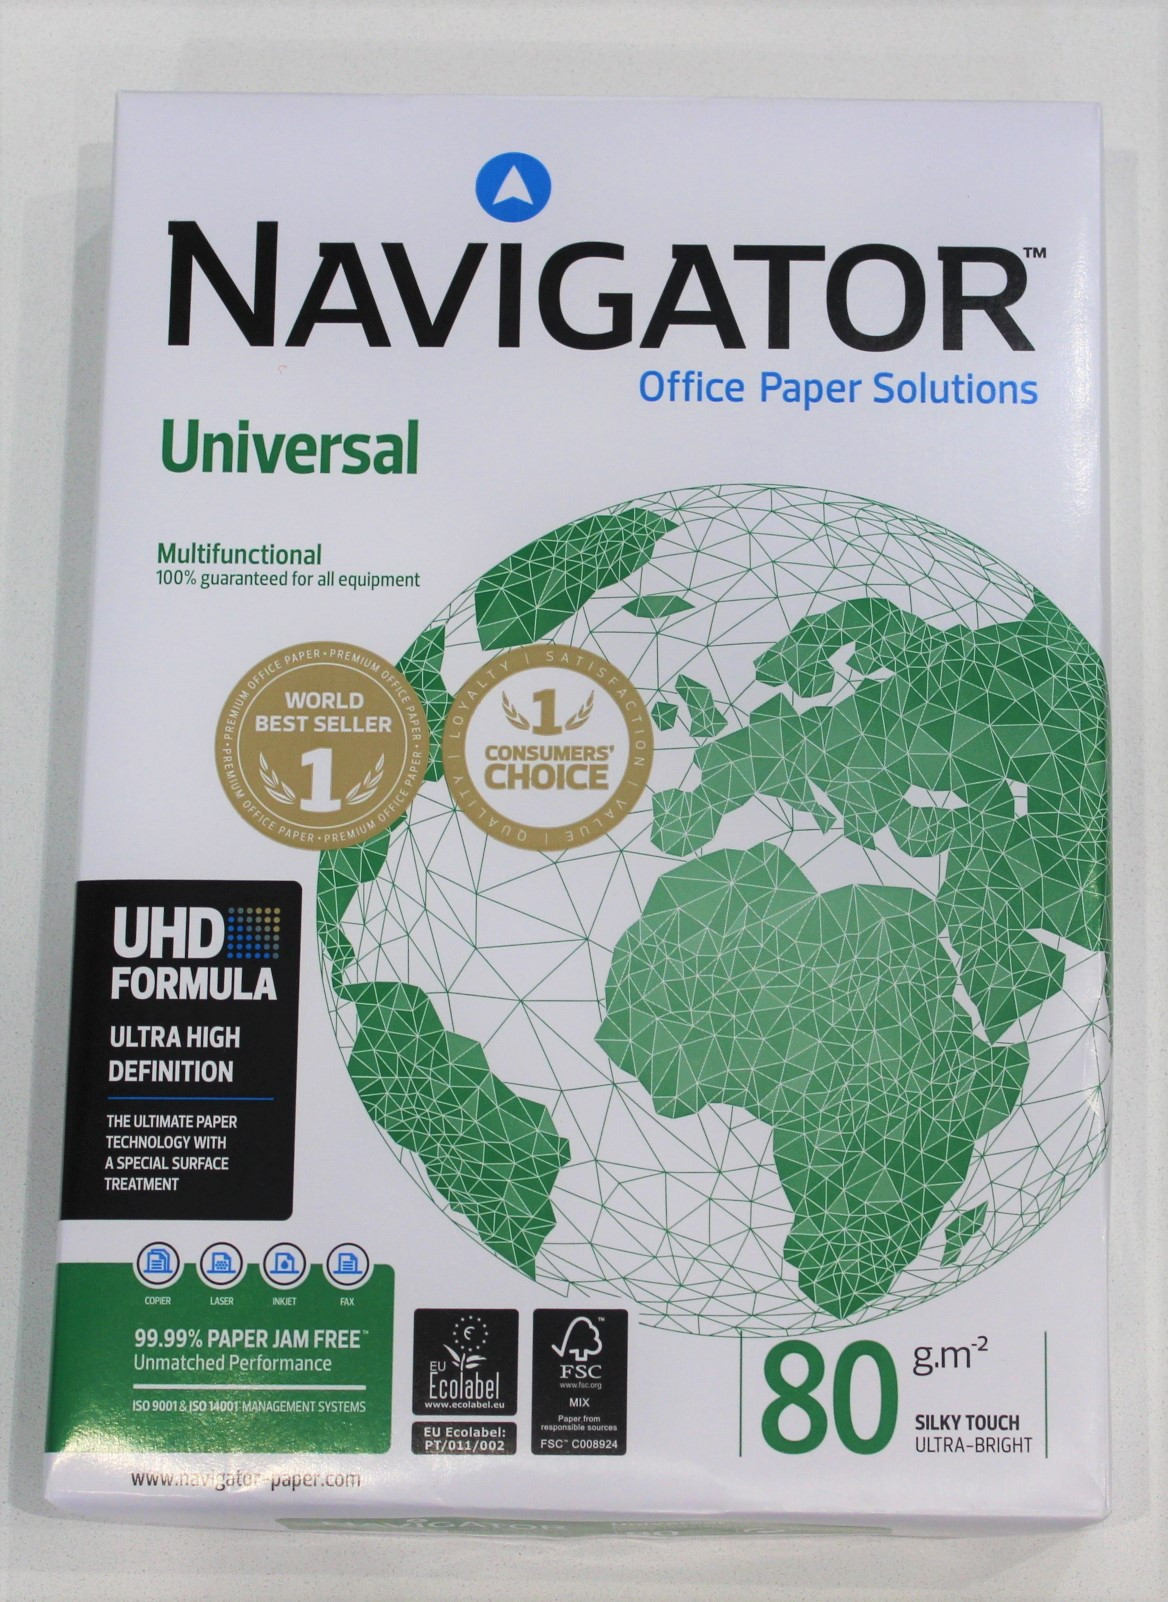 Papier A4 blanc 80 g Navigator Universal - Ramette de 500 feuilles